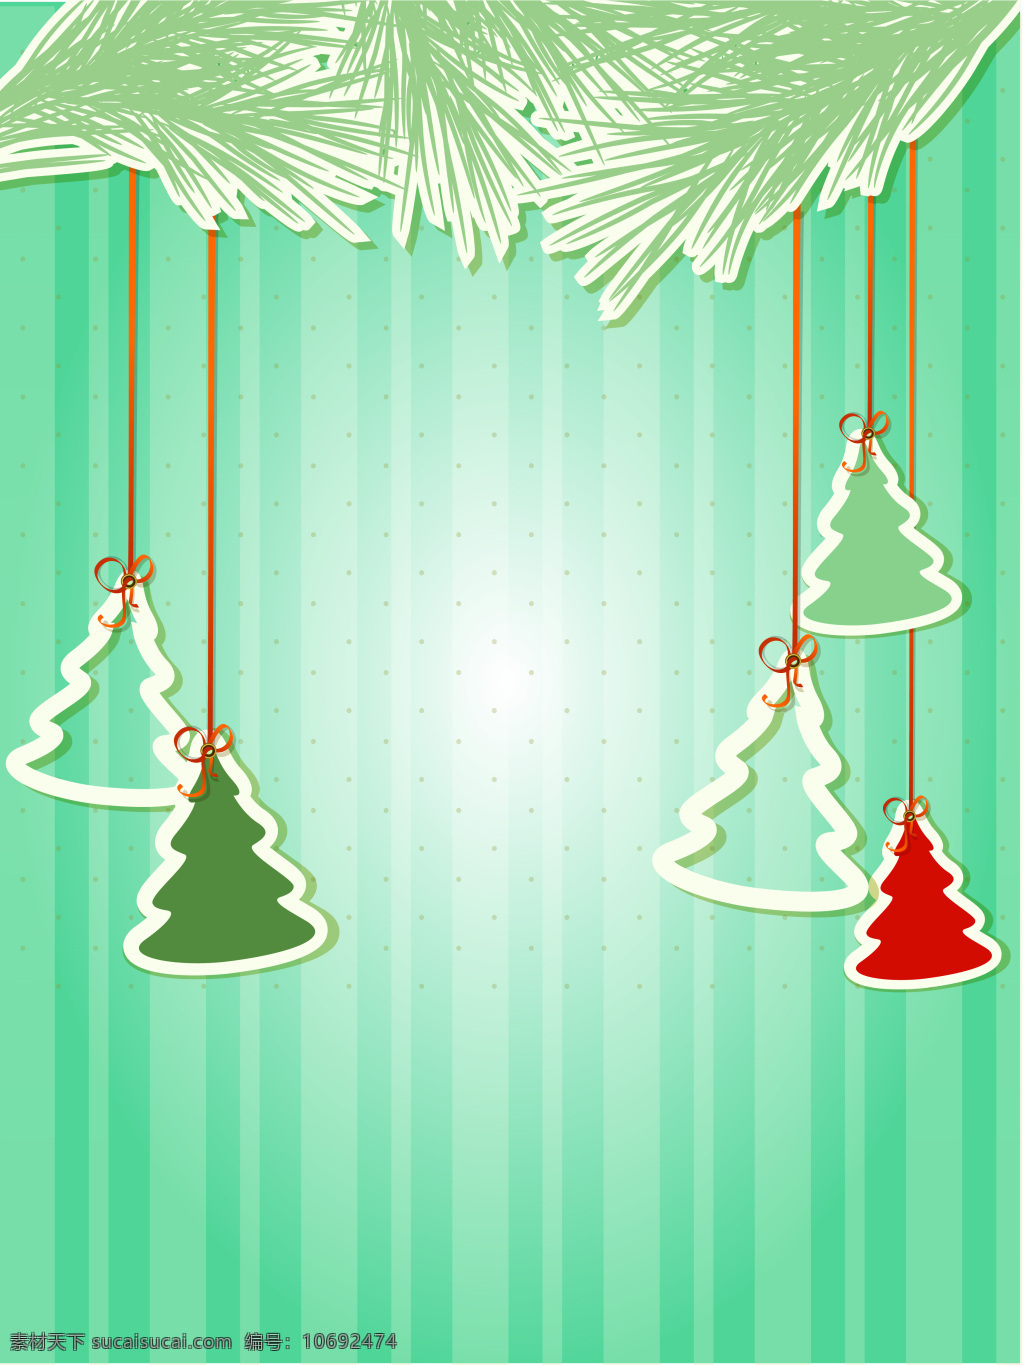 竖 条纹 悬挂 圣诞树 矢量 背景 素 蓝色 小 清新 圣诞 祝福 海报 新品 促销 开心